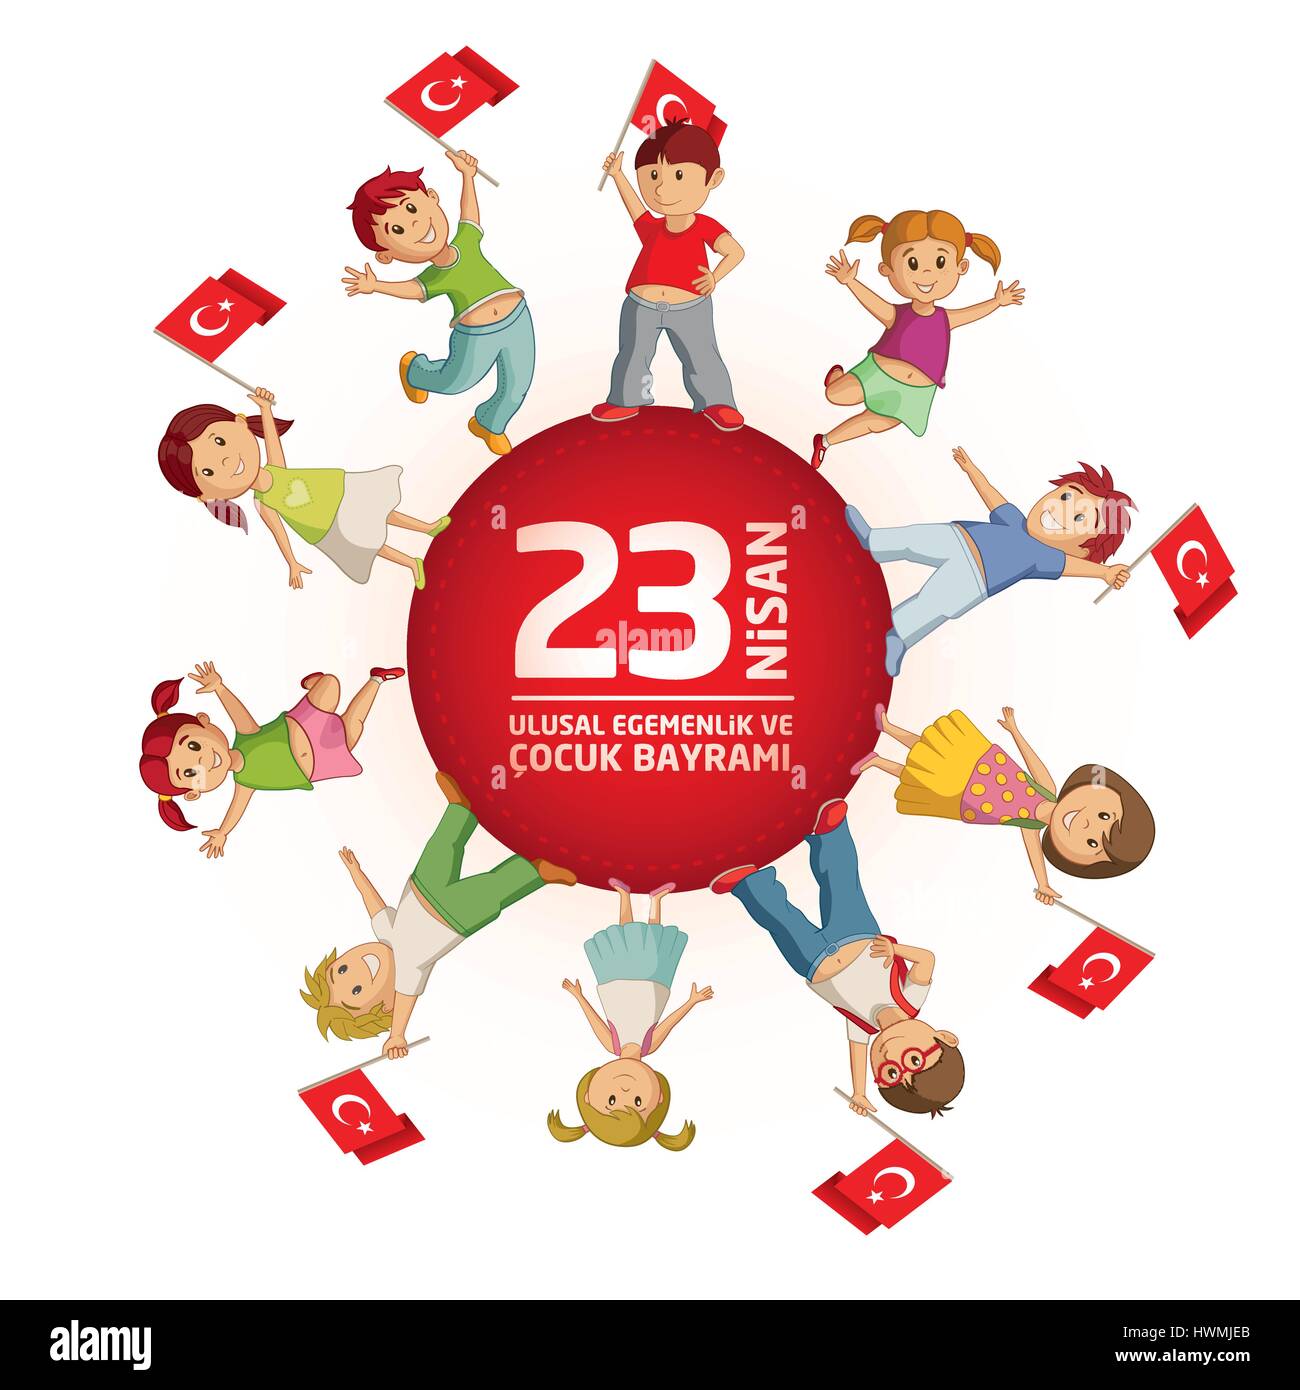 Vektor-Illustration der 23 Nisan Çocuk Bayrami, April 23 türkische nationale Souveränität und Kinder Tag, Design-Vorlage für den türkischen Urlaub. Stock Vektor